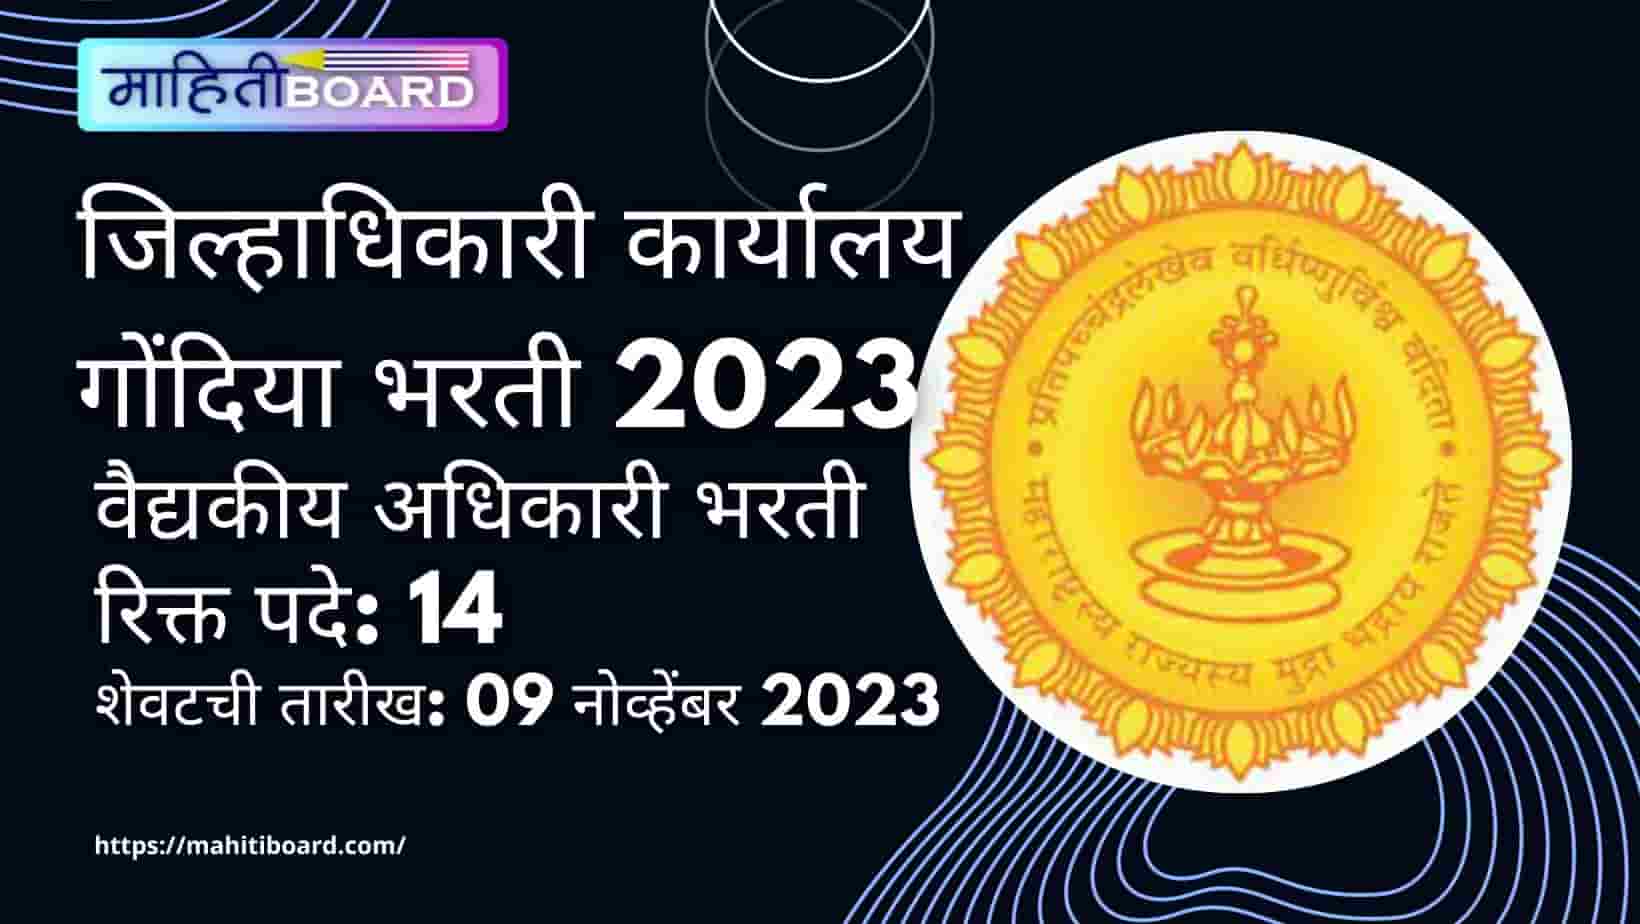 Jilhadhikari Karyalay Gondia Bharti 2023